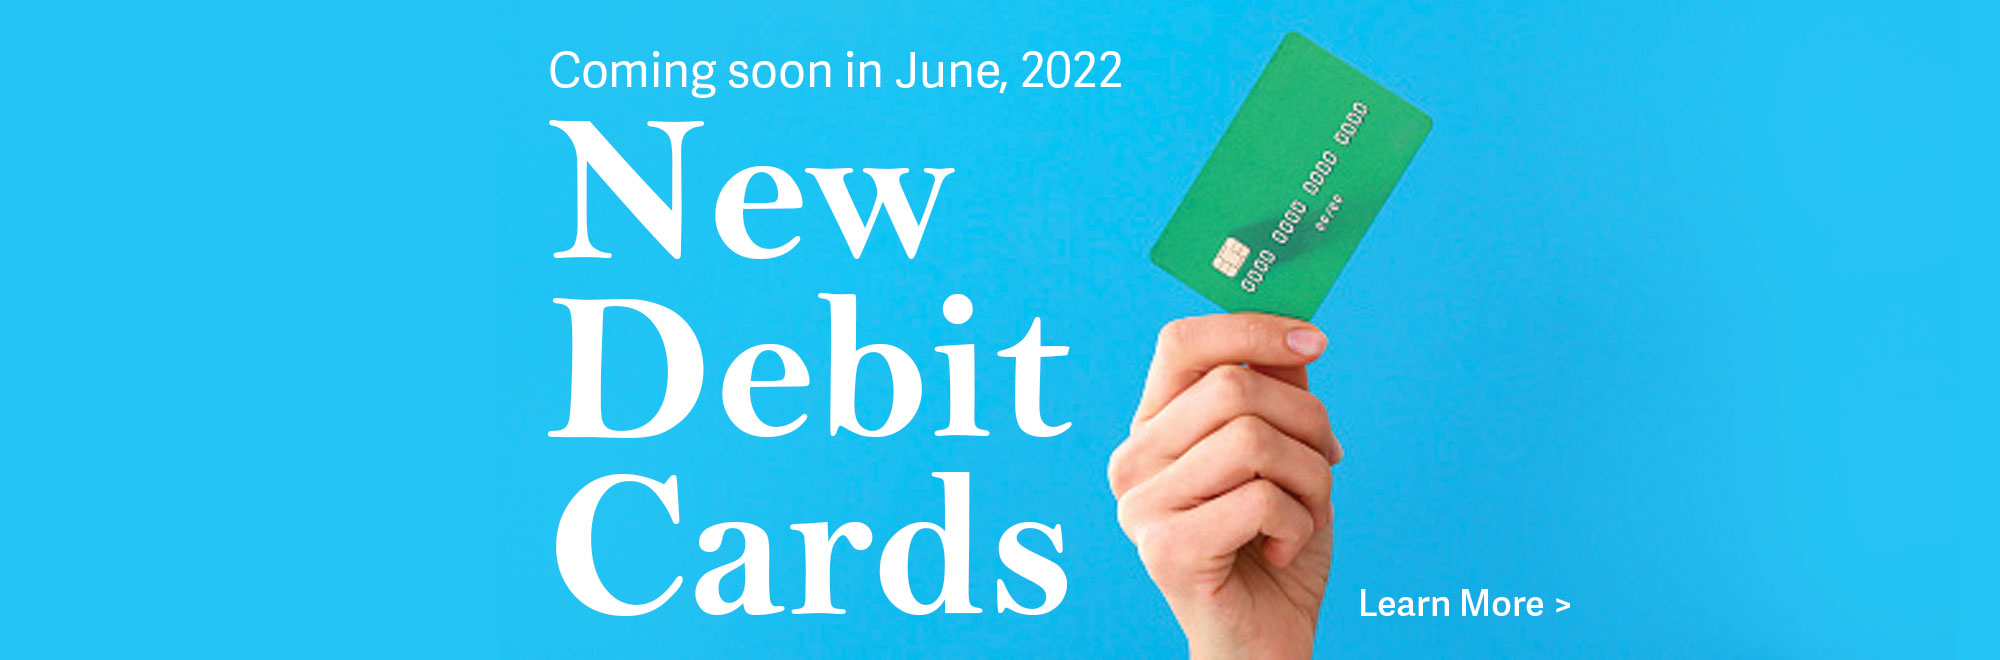 New Debit Cards, June 2022